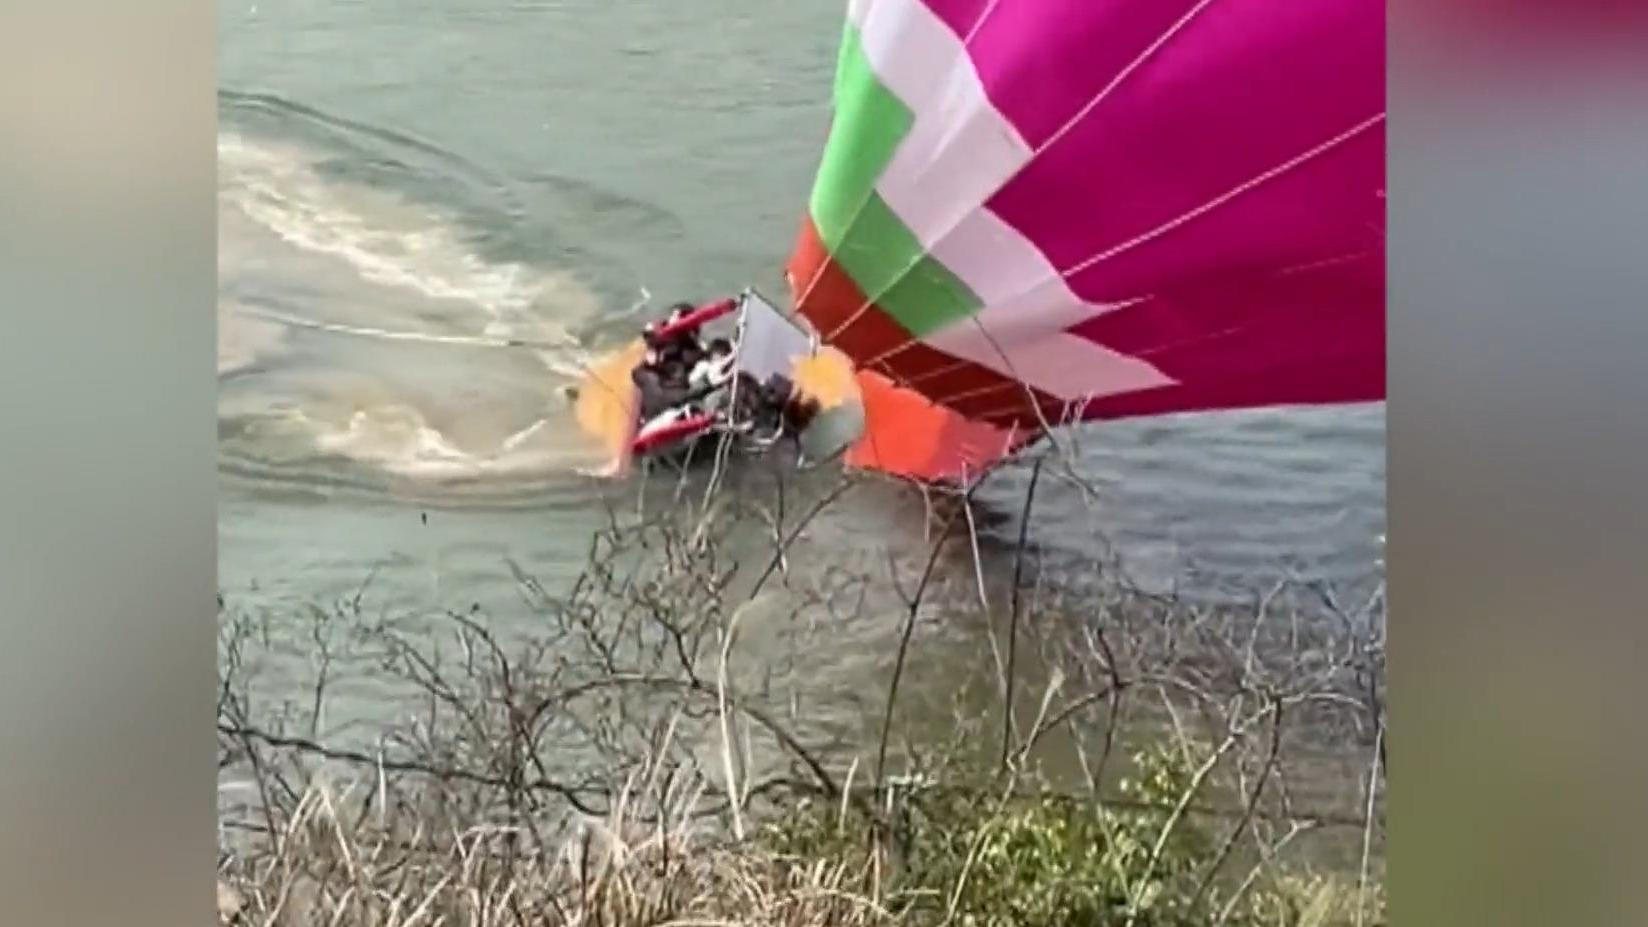 Heißluftballon mit sieben Touristen stürzt ab Pilot verliert die Kontrolle!